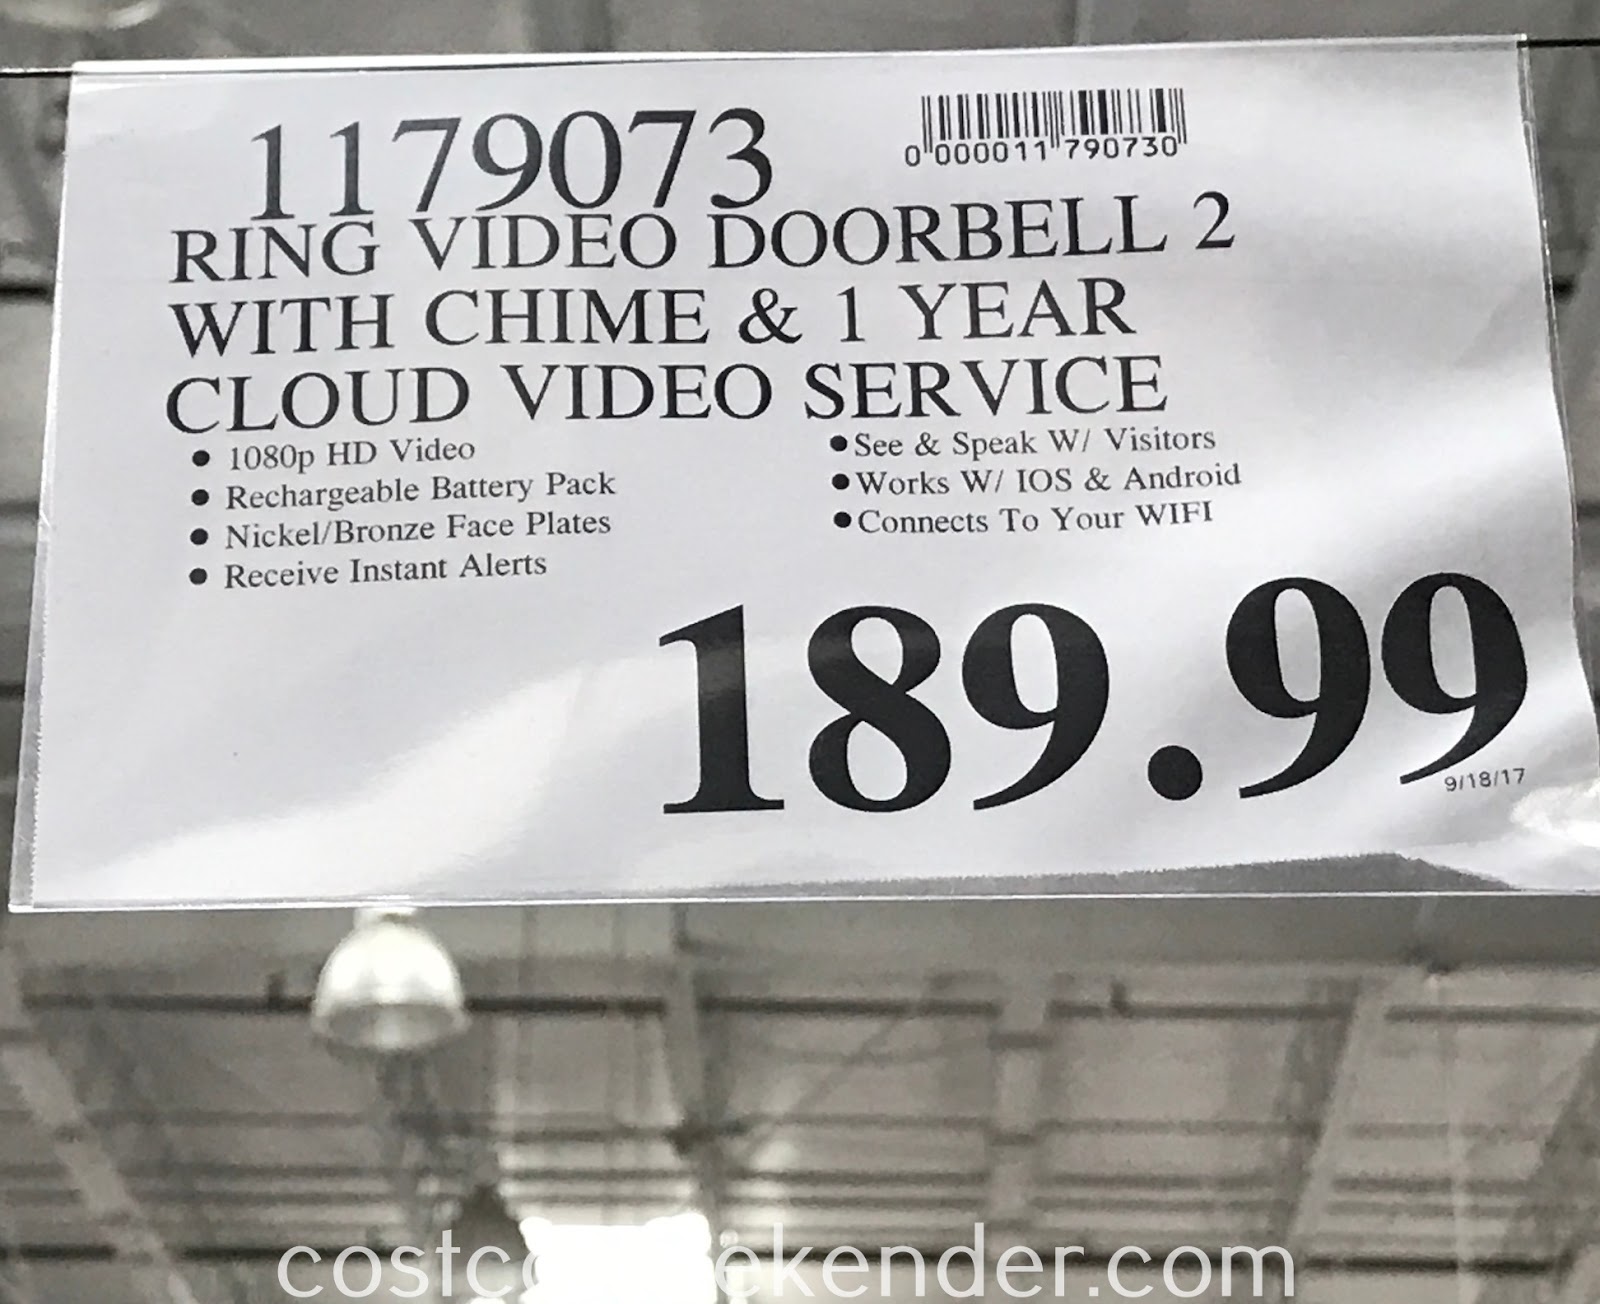 Ring Video Doorbell 2 + Chime Costco Weekender